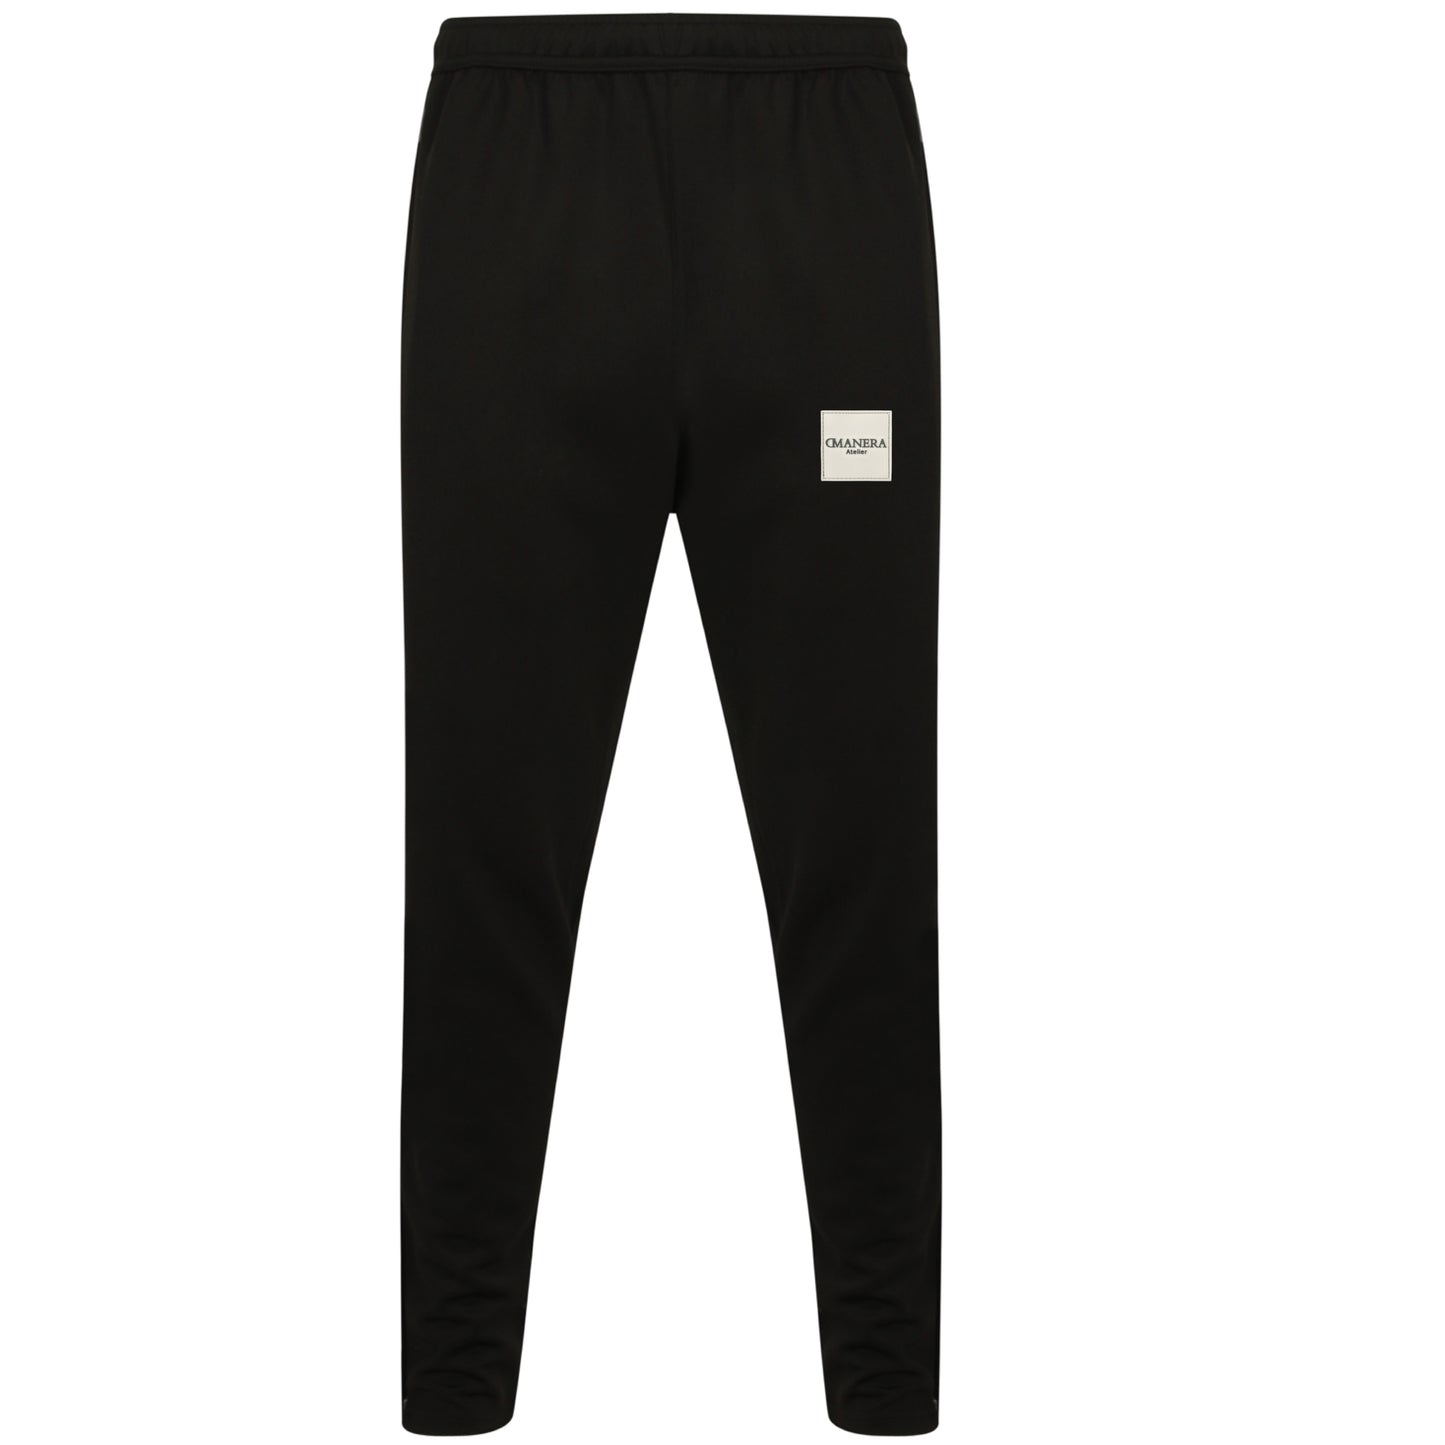 Premium Tracksuit Pant Black/Grey 250 g/m²